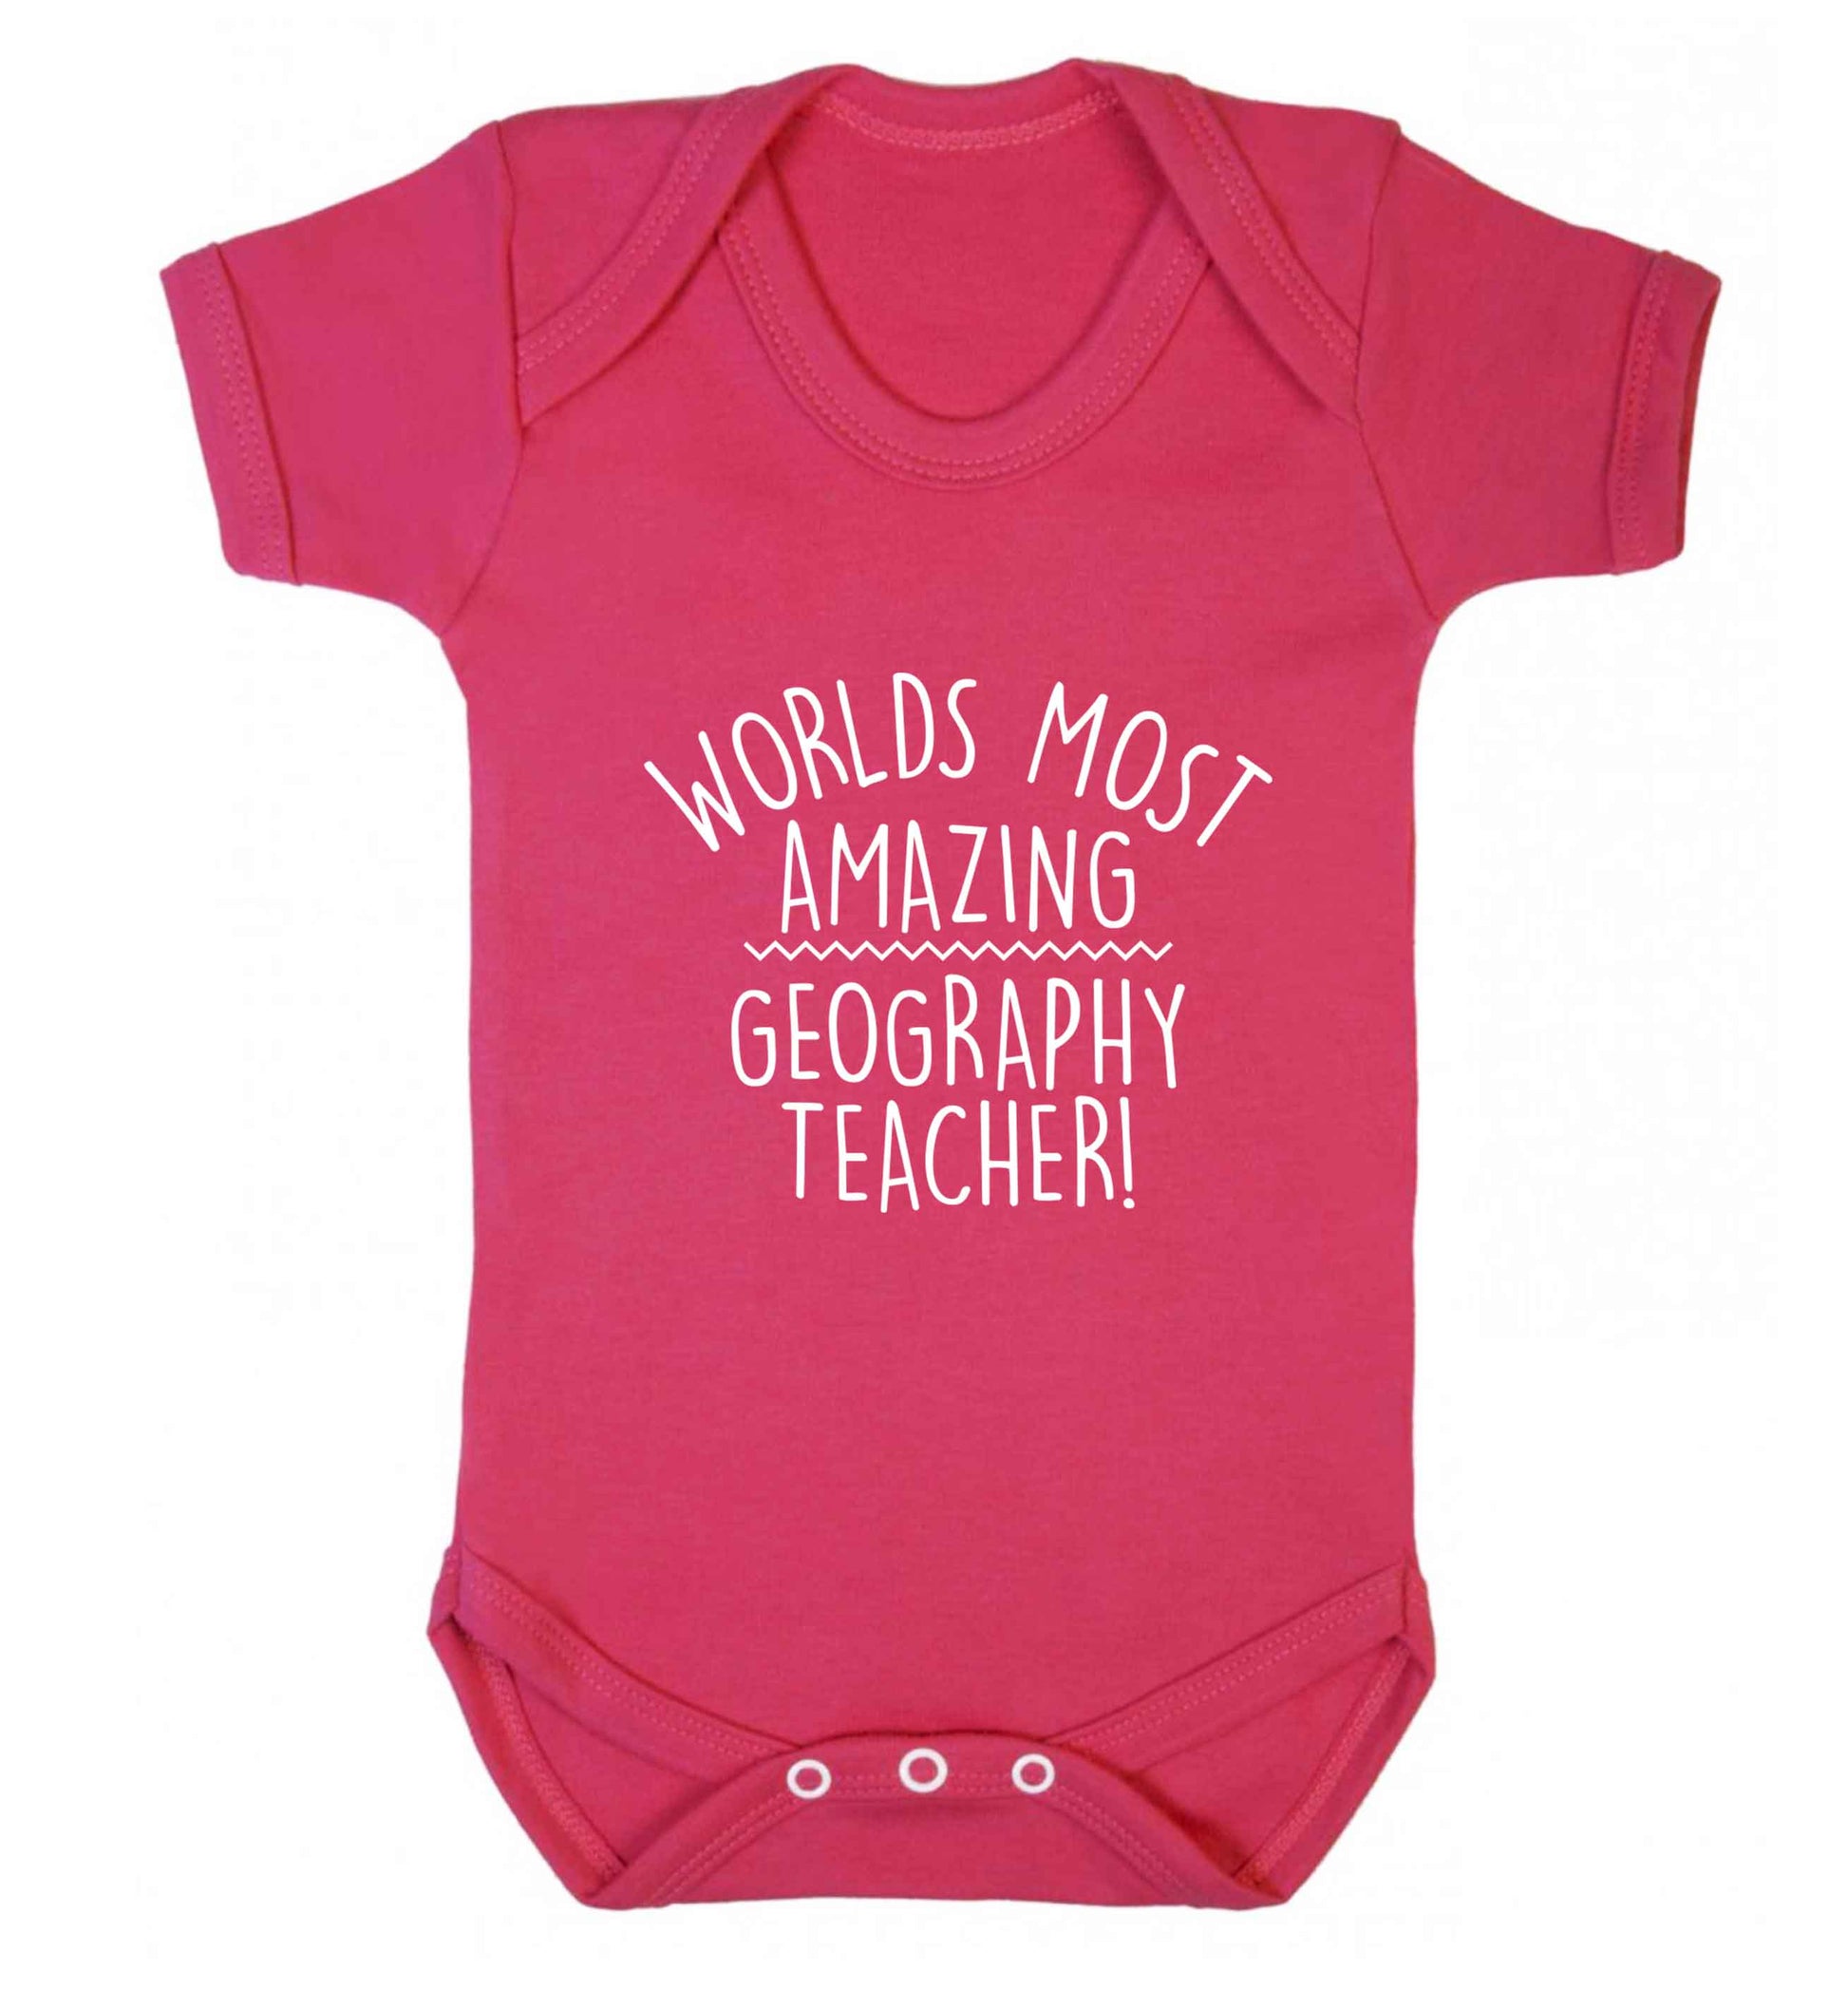 Worlds most amazing geography teacher baby vest dark pink 18-24 months